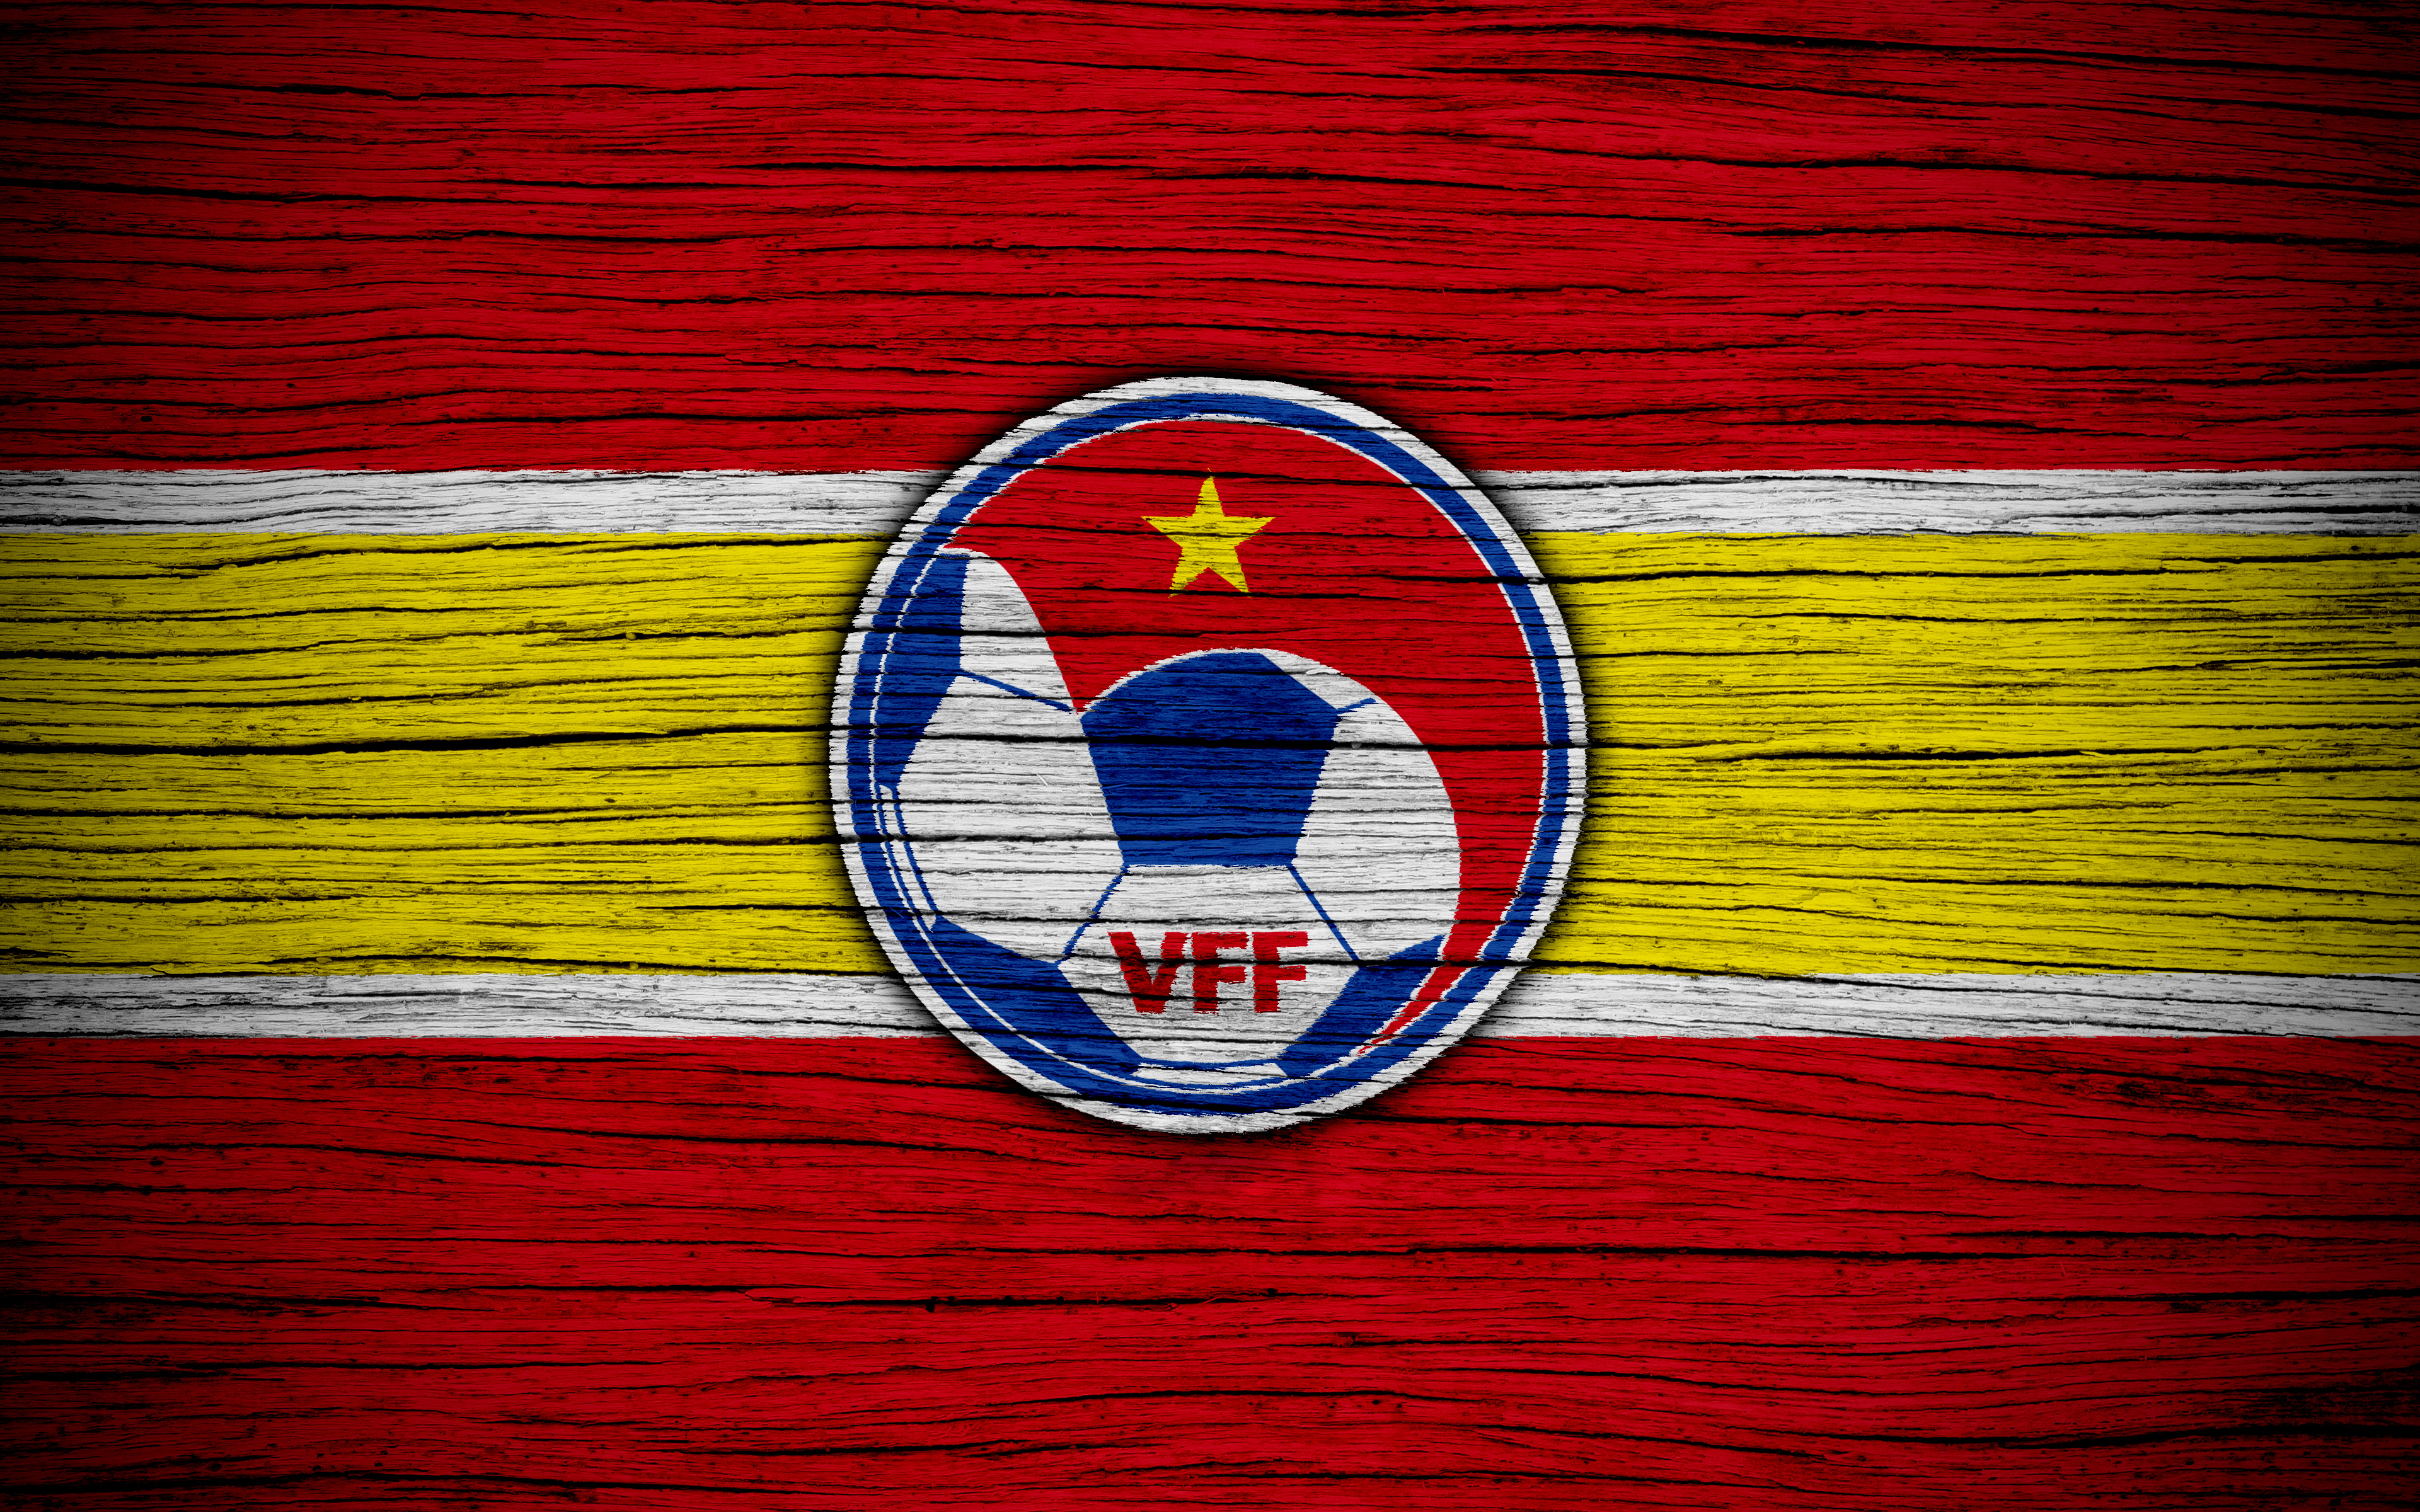 Скачать обои Сборная Вьетнама По Футболу на телефон бесплатно